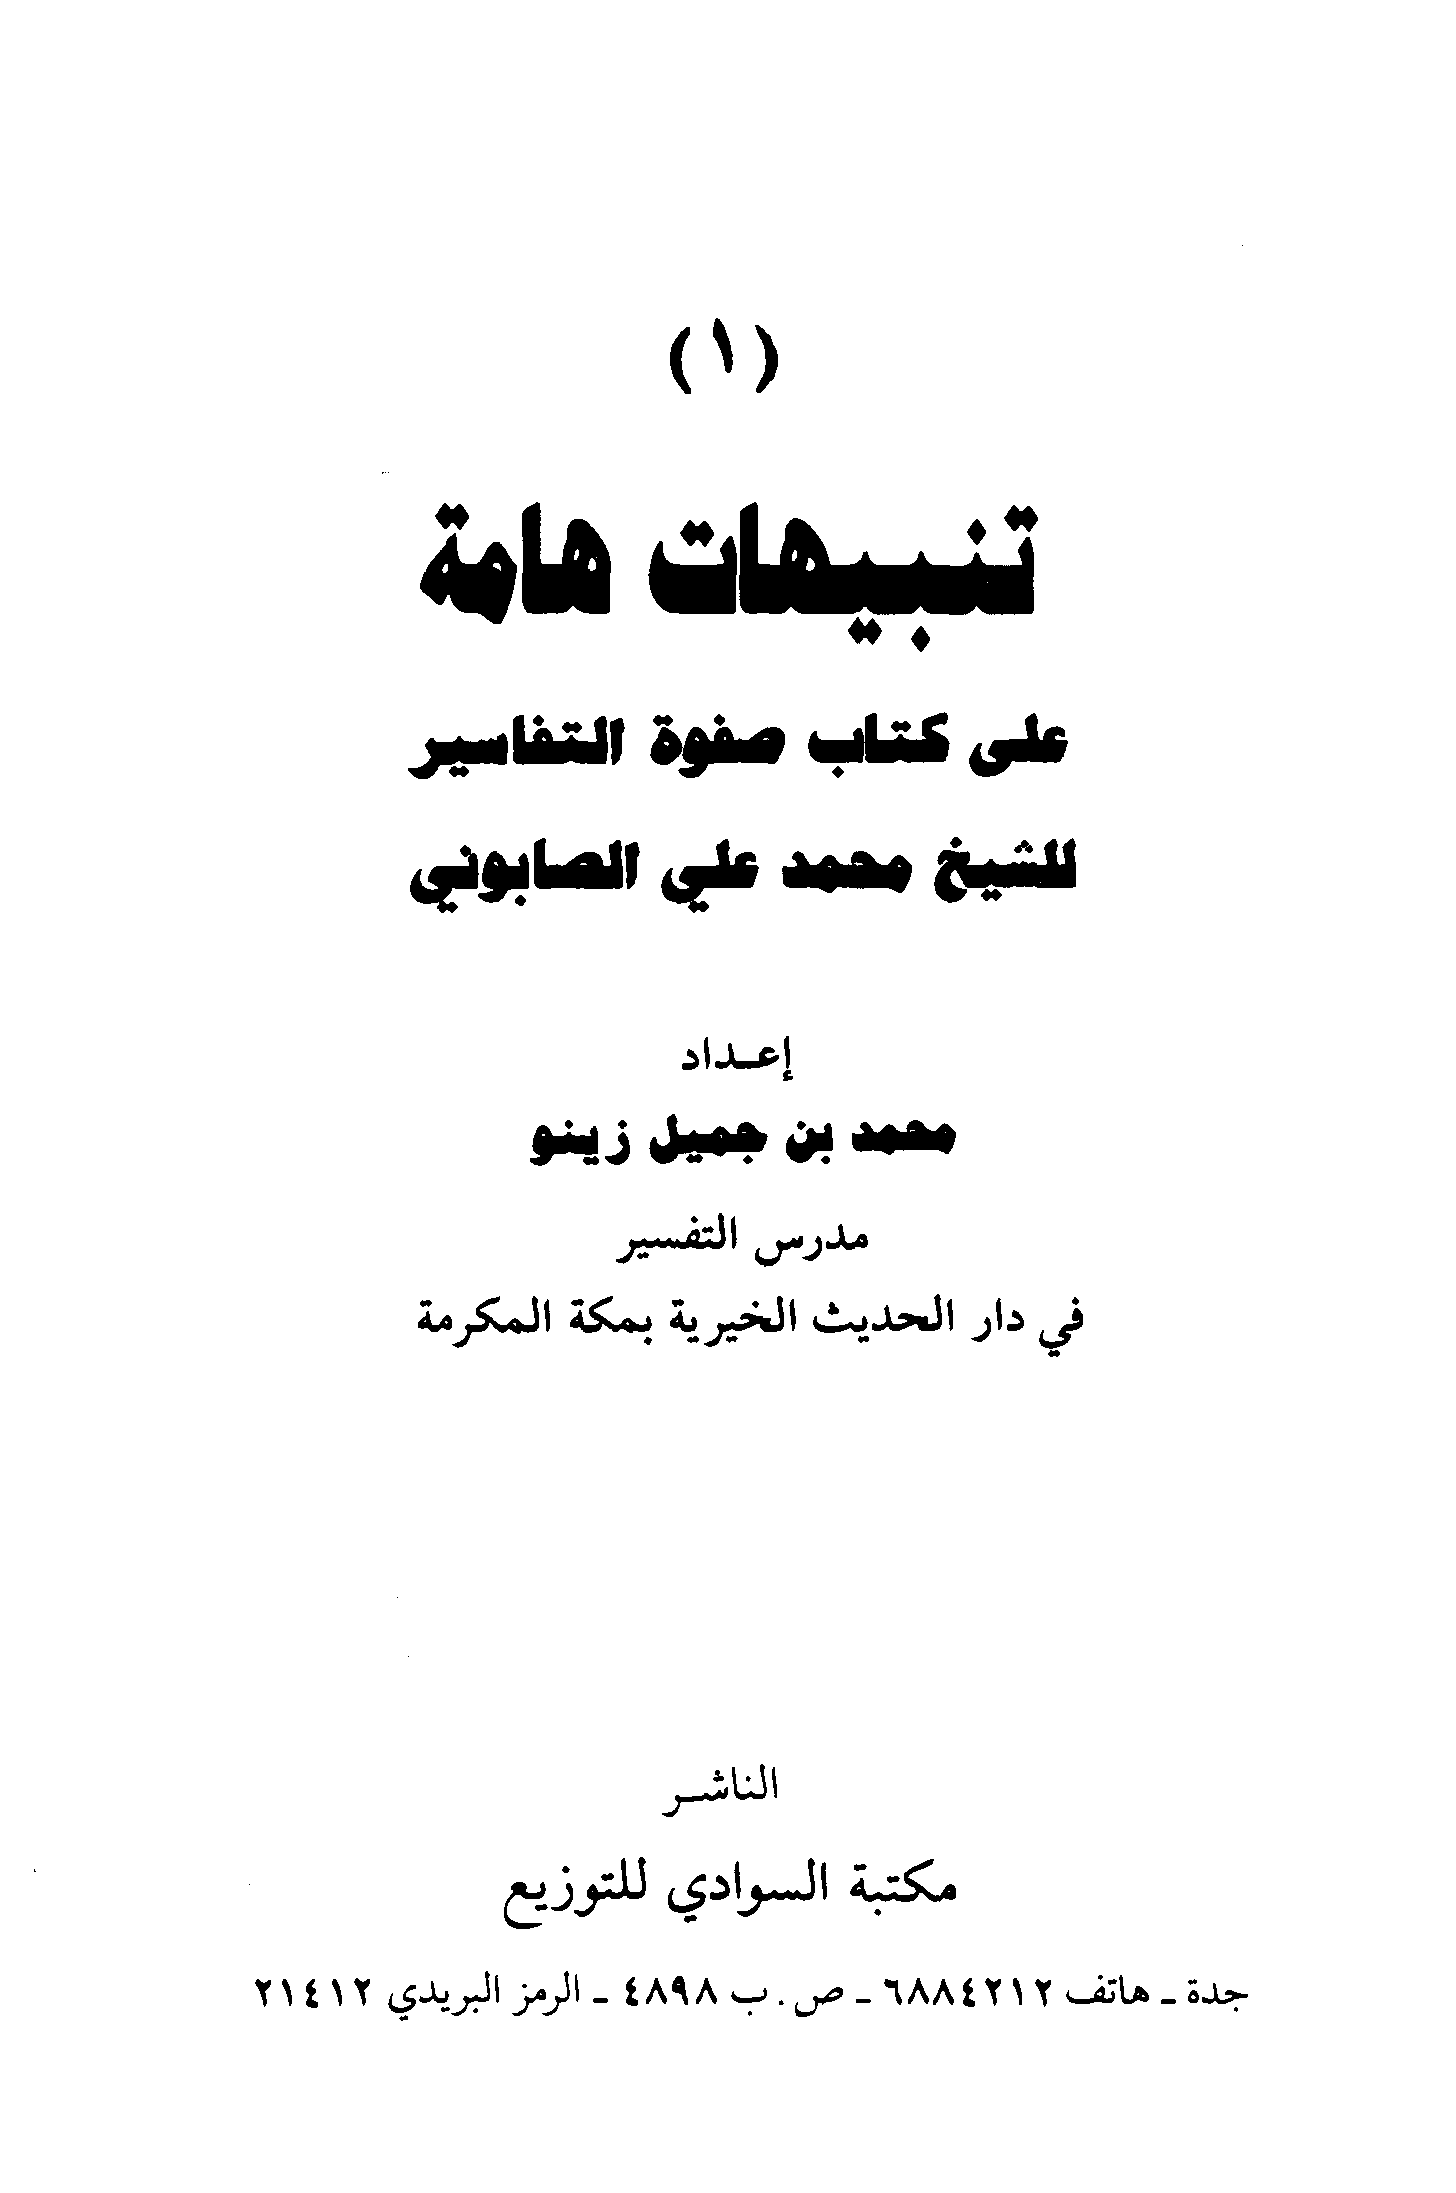 تحميل كتاب تنبيهات هامة على كتاب صفوة التفاسير للمؤلف: الشيخ محمد بن جميل زينو (ت 1431)